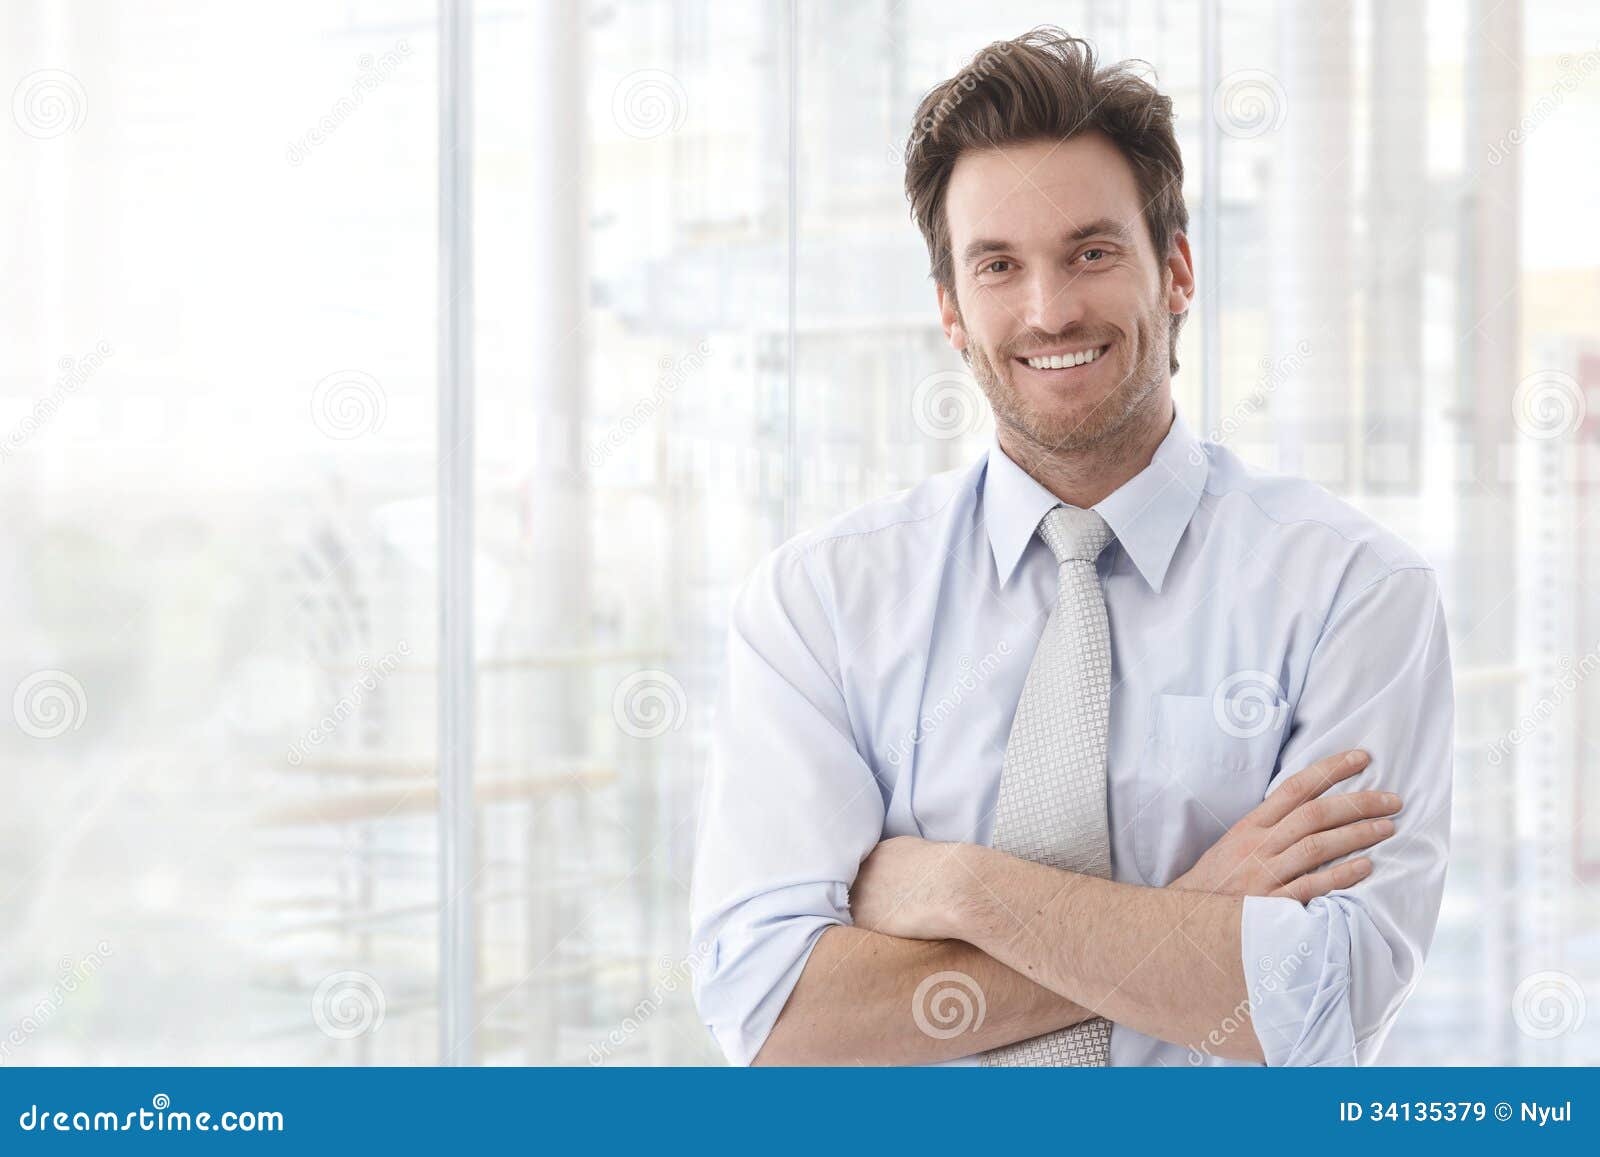 portrait of confident businessman